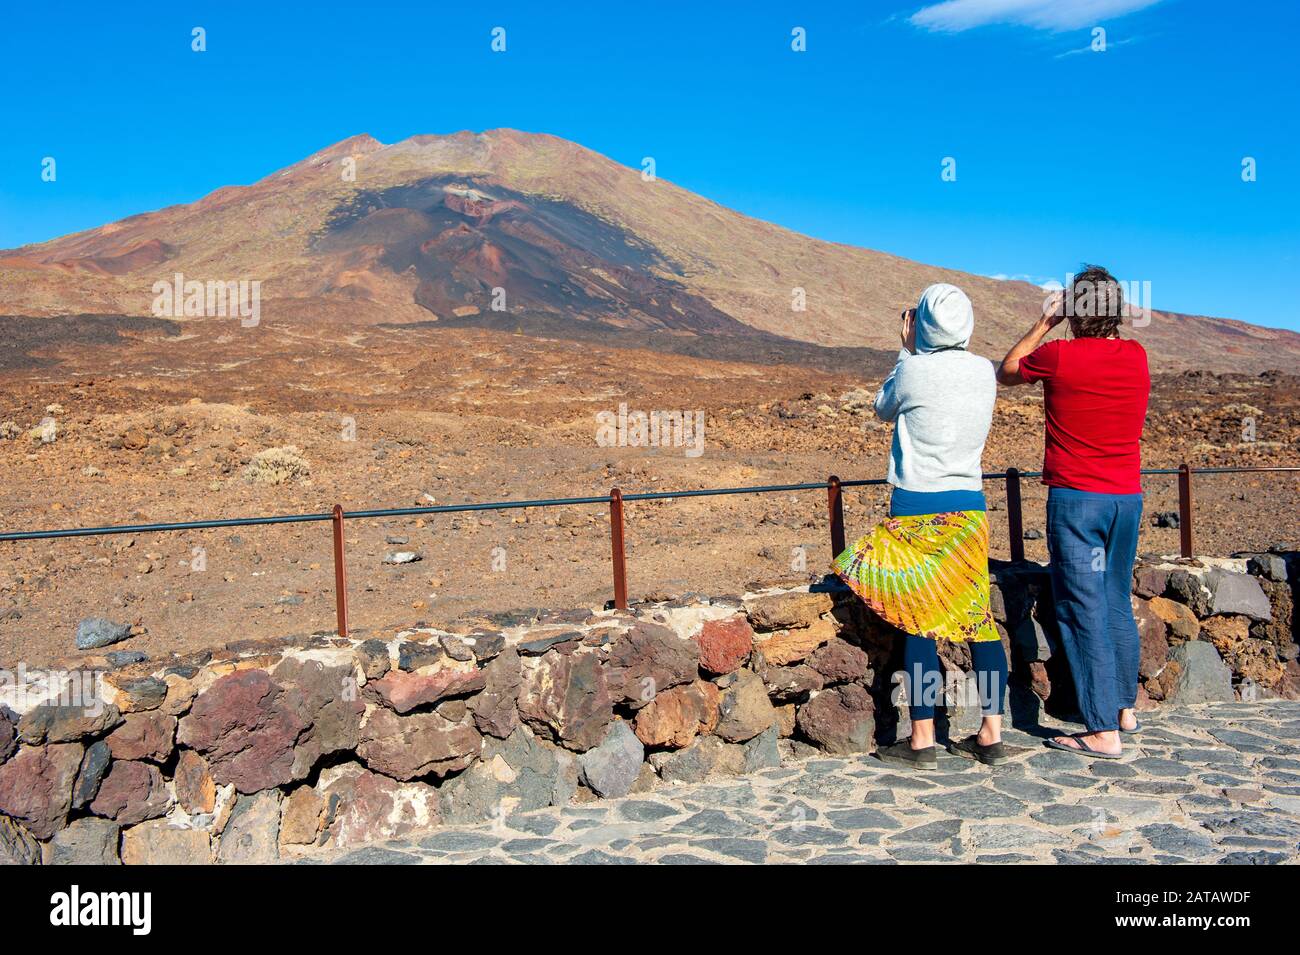 KANARENINSEL TENERA, SPANIEN - 24 DEC, 2019: Touristen mit Ferngläsern beobachten die violette und braune Lava aus den unteren Schlitzen des Vulkans Pico Vie Stockfoto